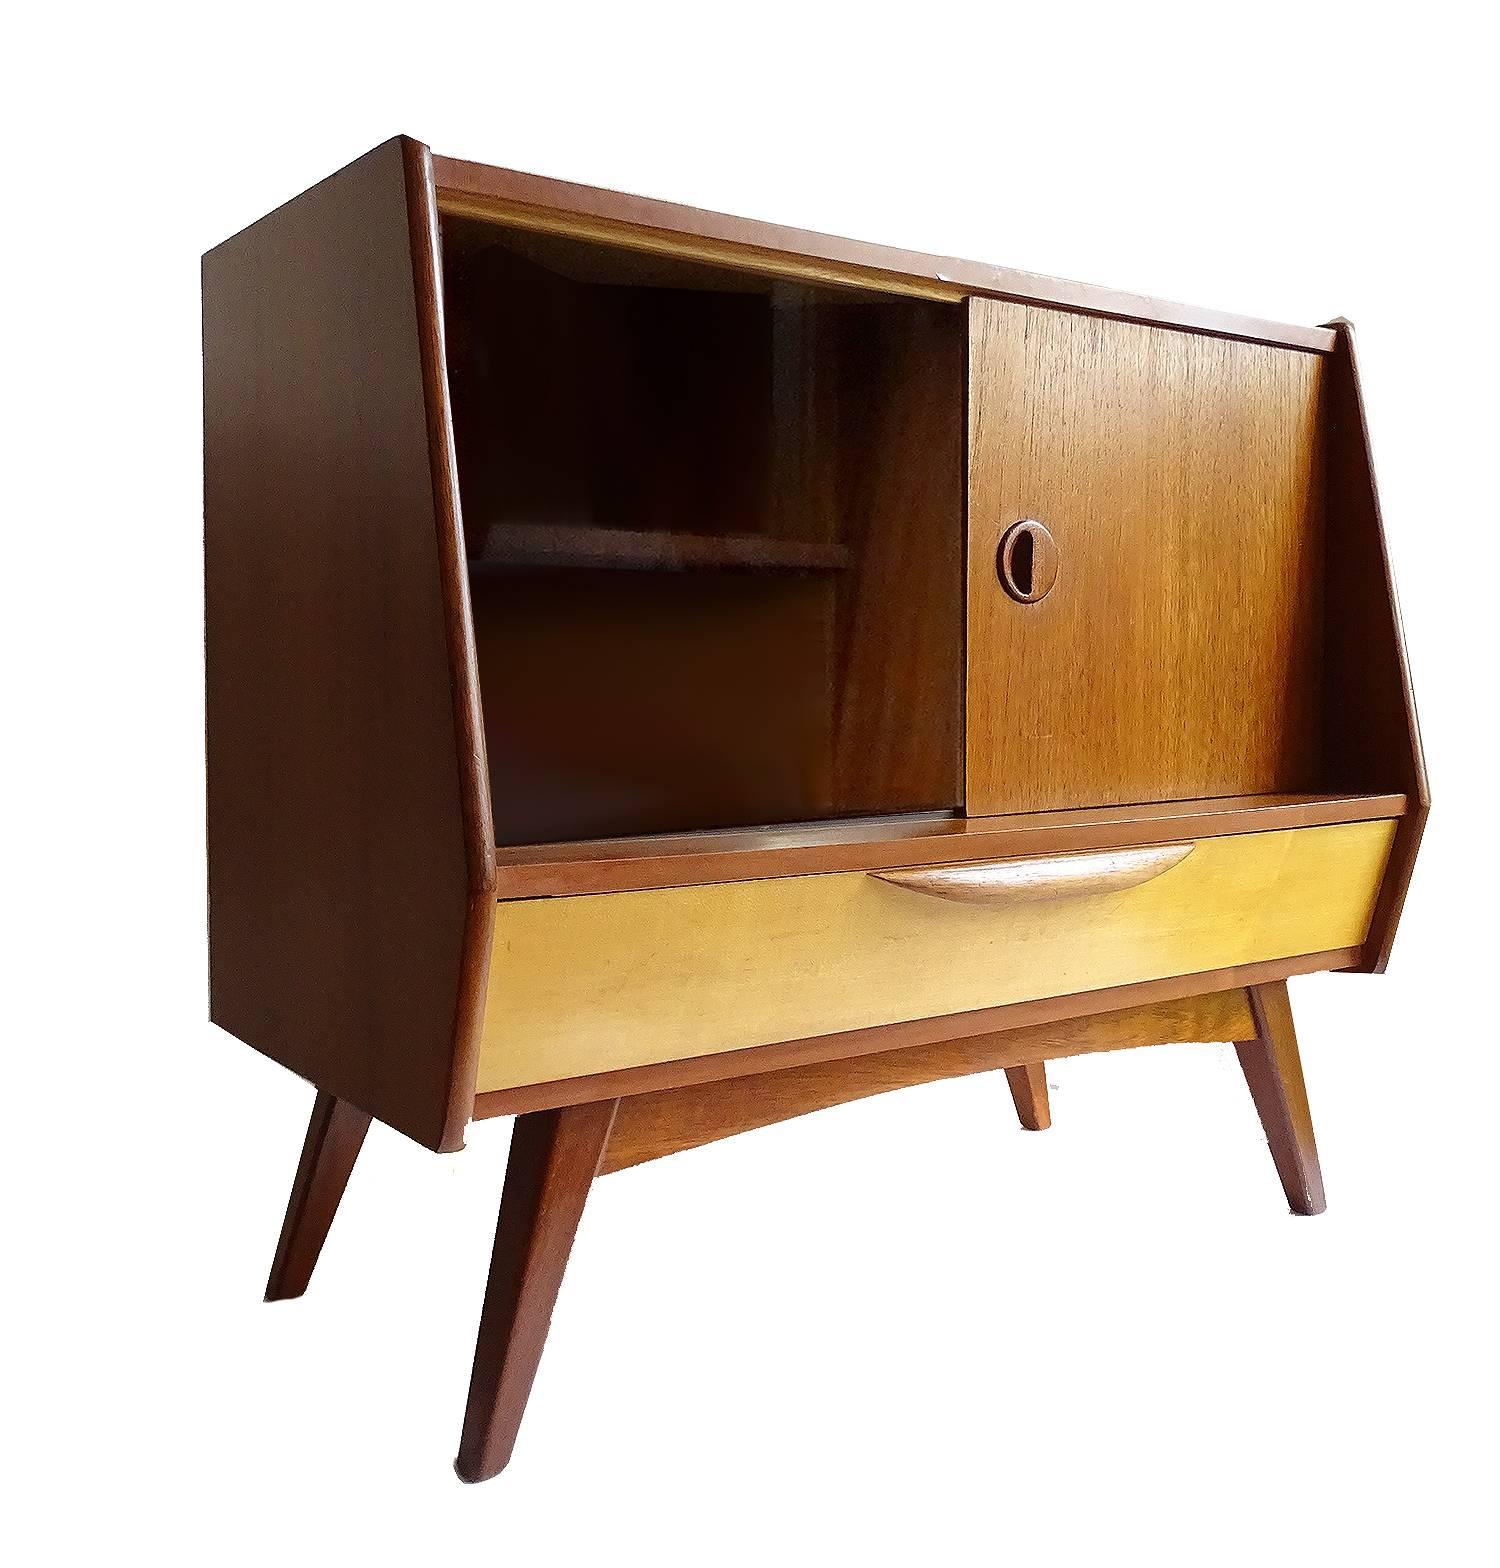 Midcentury Danish Modern Webe Van Teeffelen Sideboard Cabinet, 1960s